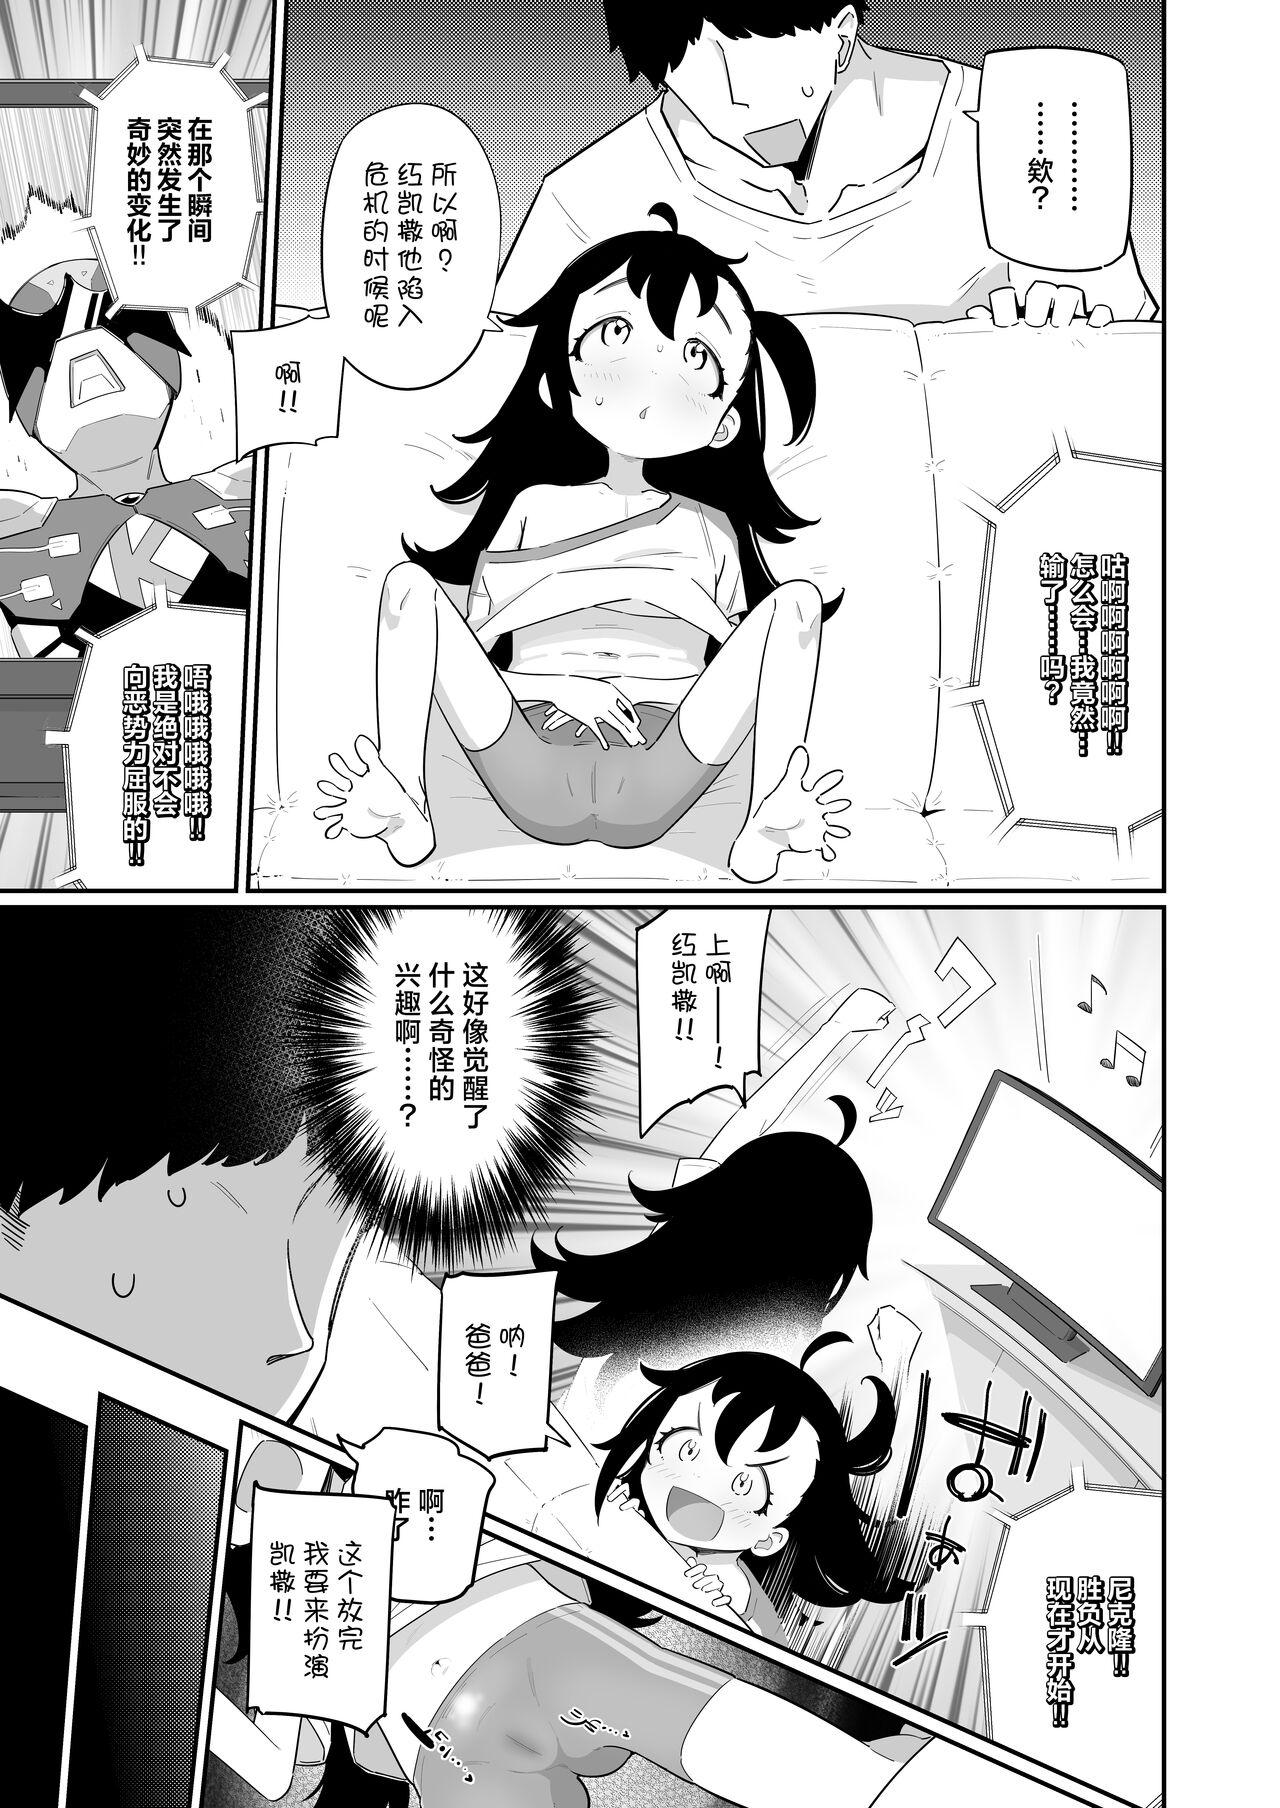 With Otou-san, Aka Kaiza ga Makesounano miruto Boku no Onaka ga Zokutte suruno, Doushite? - Original Bizarre - Page 3